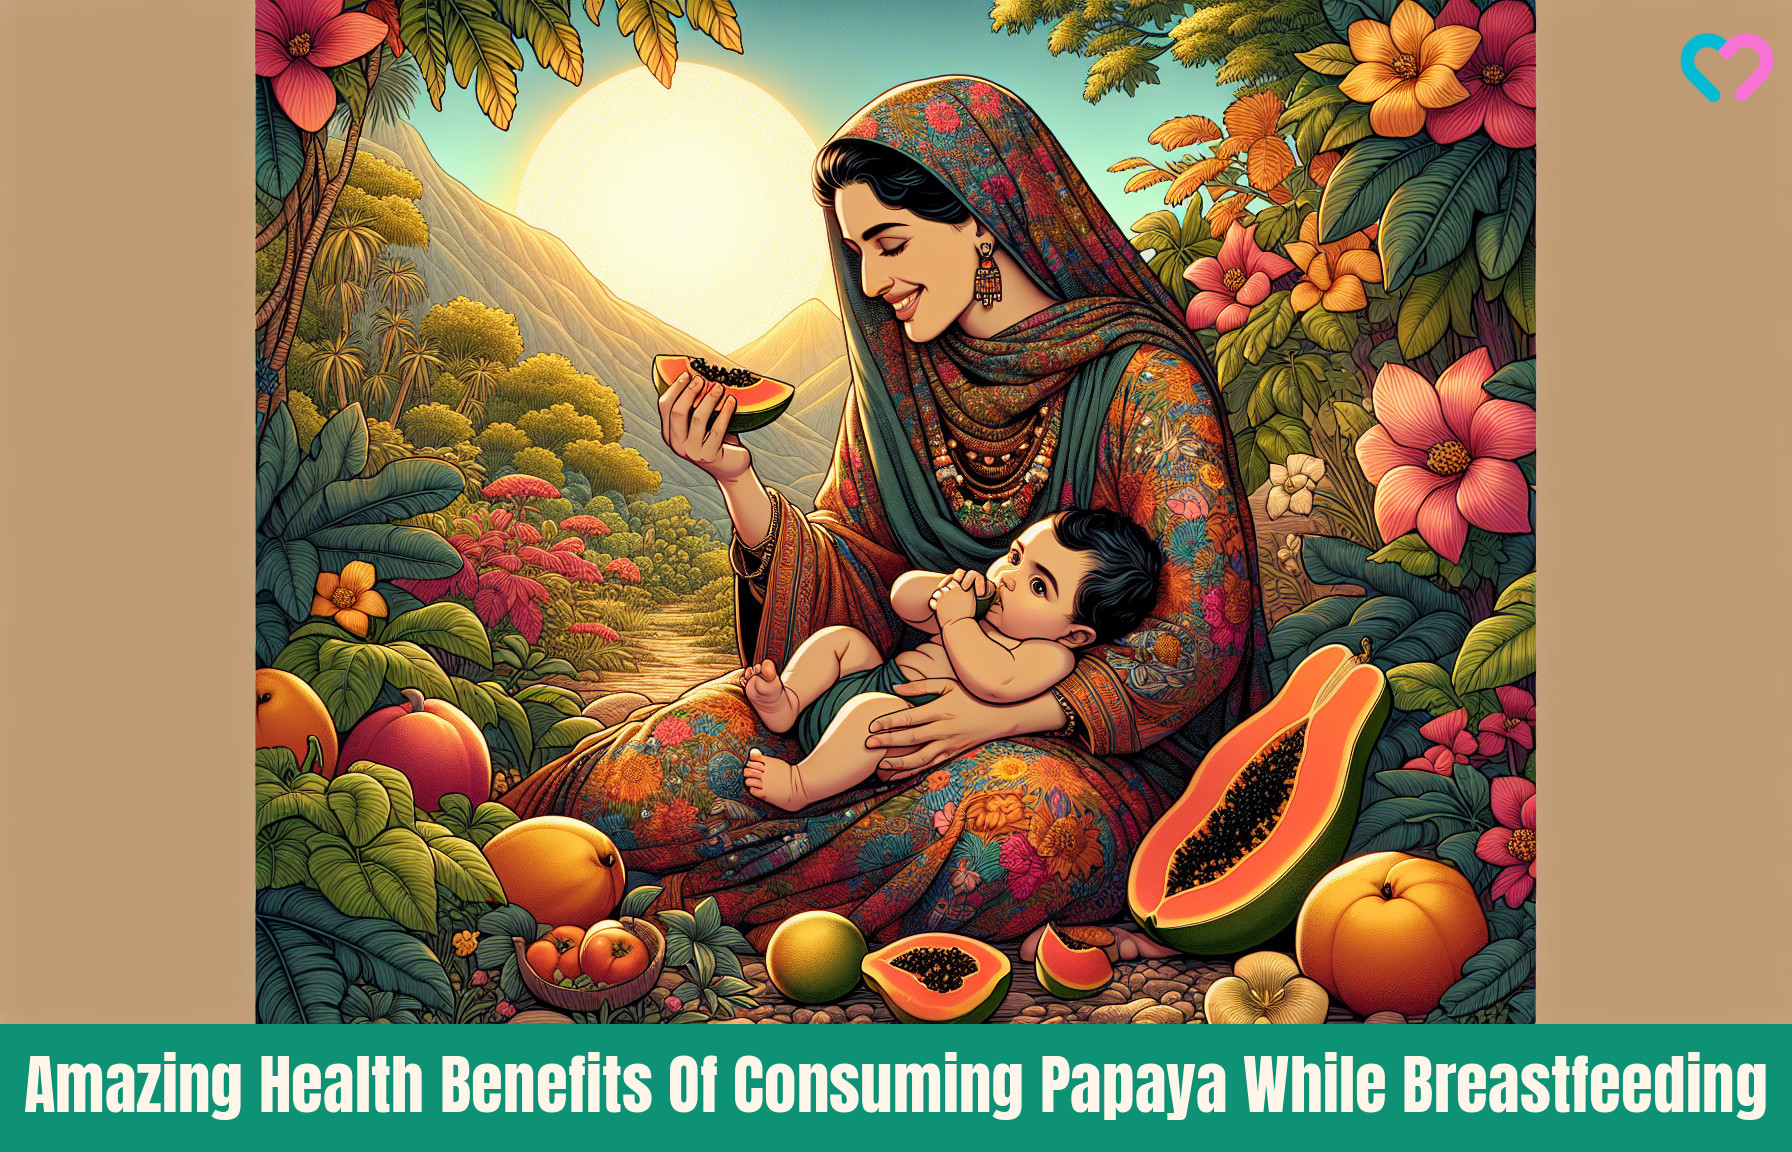 Papaya While Breastfeeding_illustration